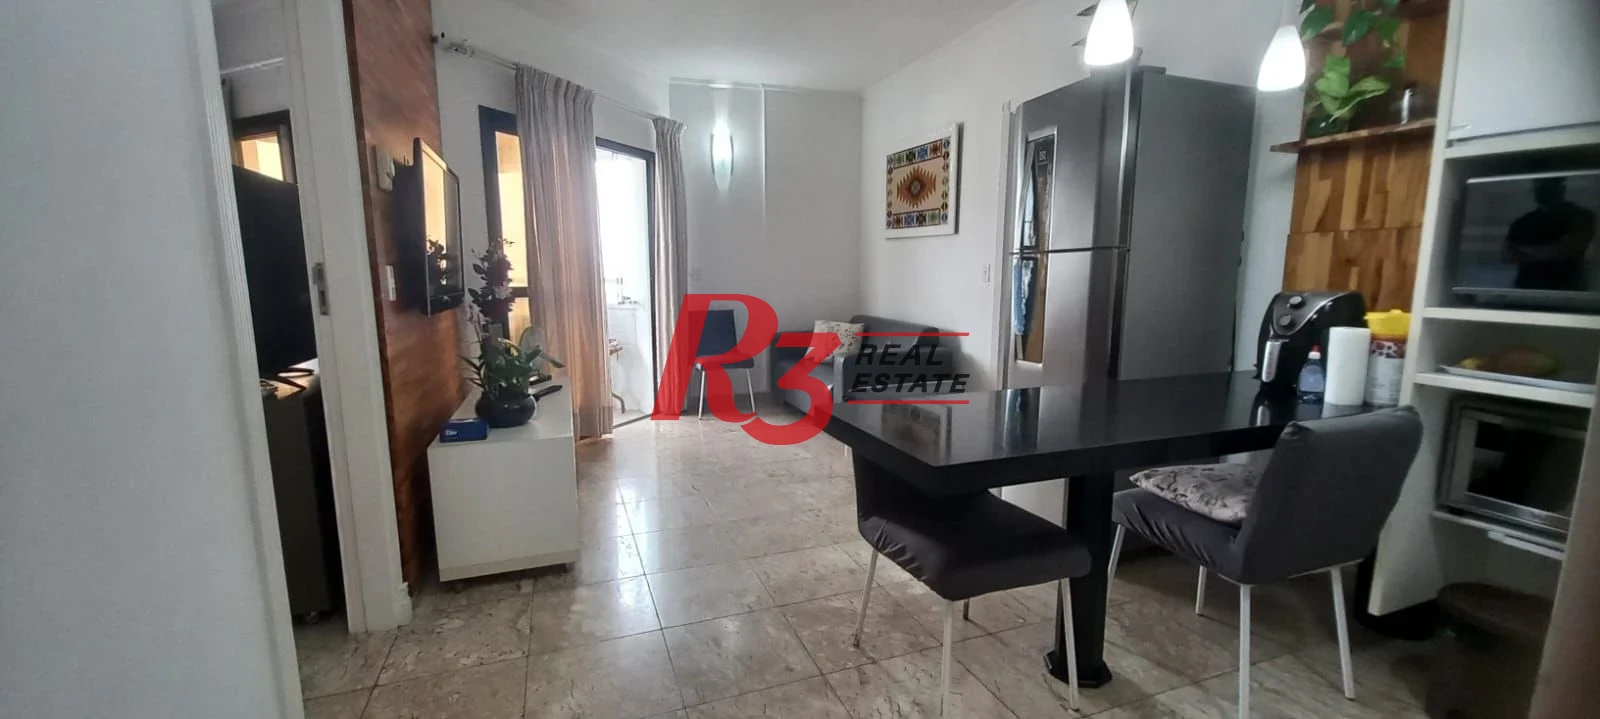 Flat com 2 dormitórios à venda, 59 m² por R$ 800.000,00 - Boqueirão - Santos/SP